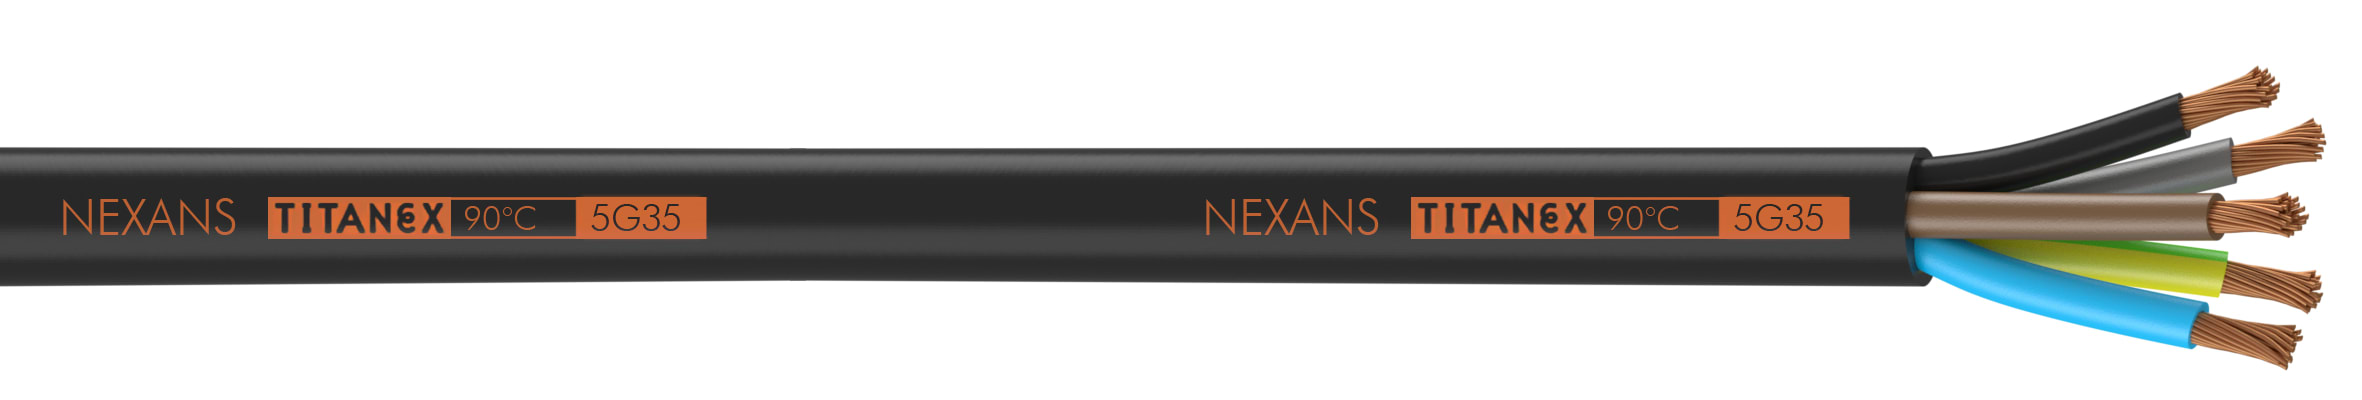 Nexans - TITANEX H07RN-F 4G95 TR